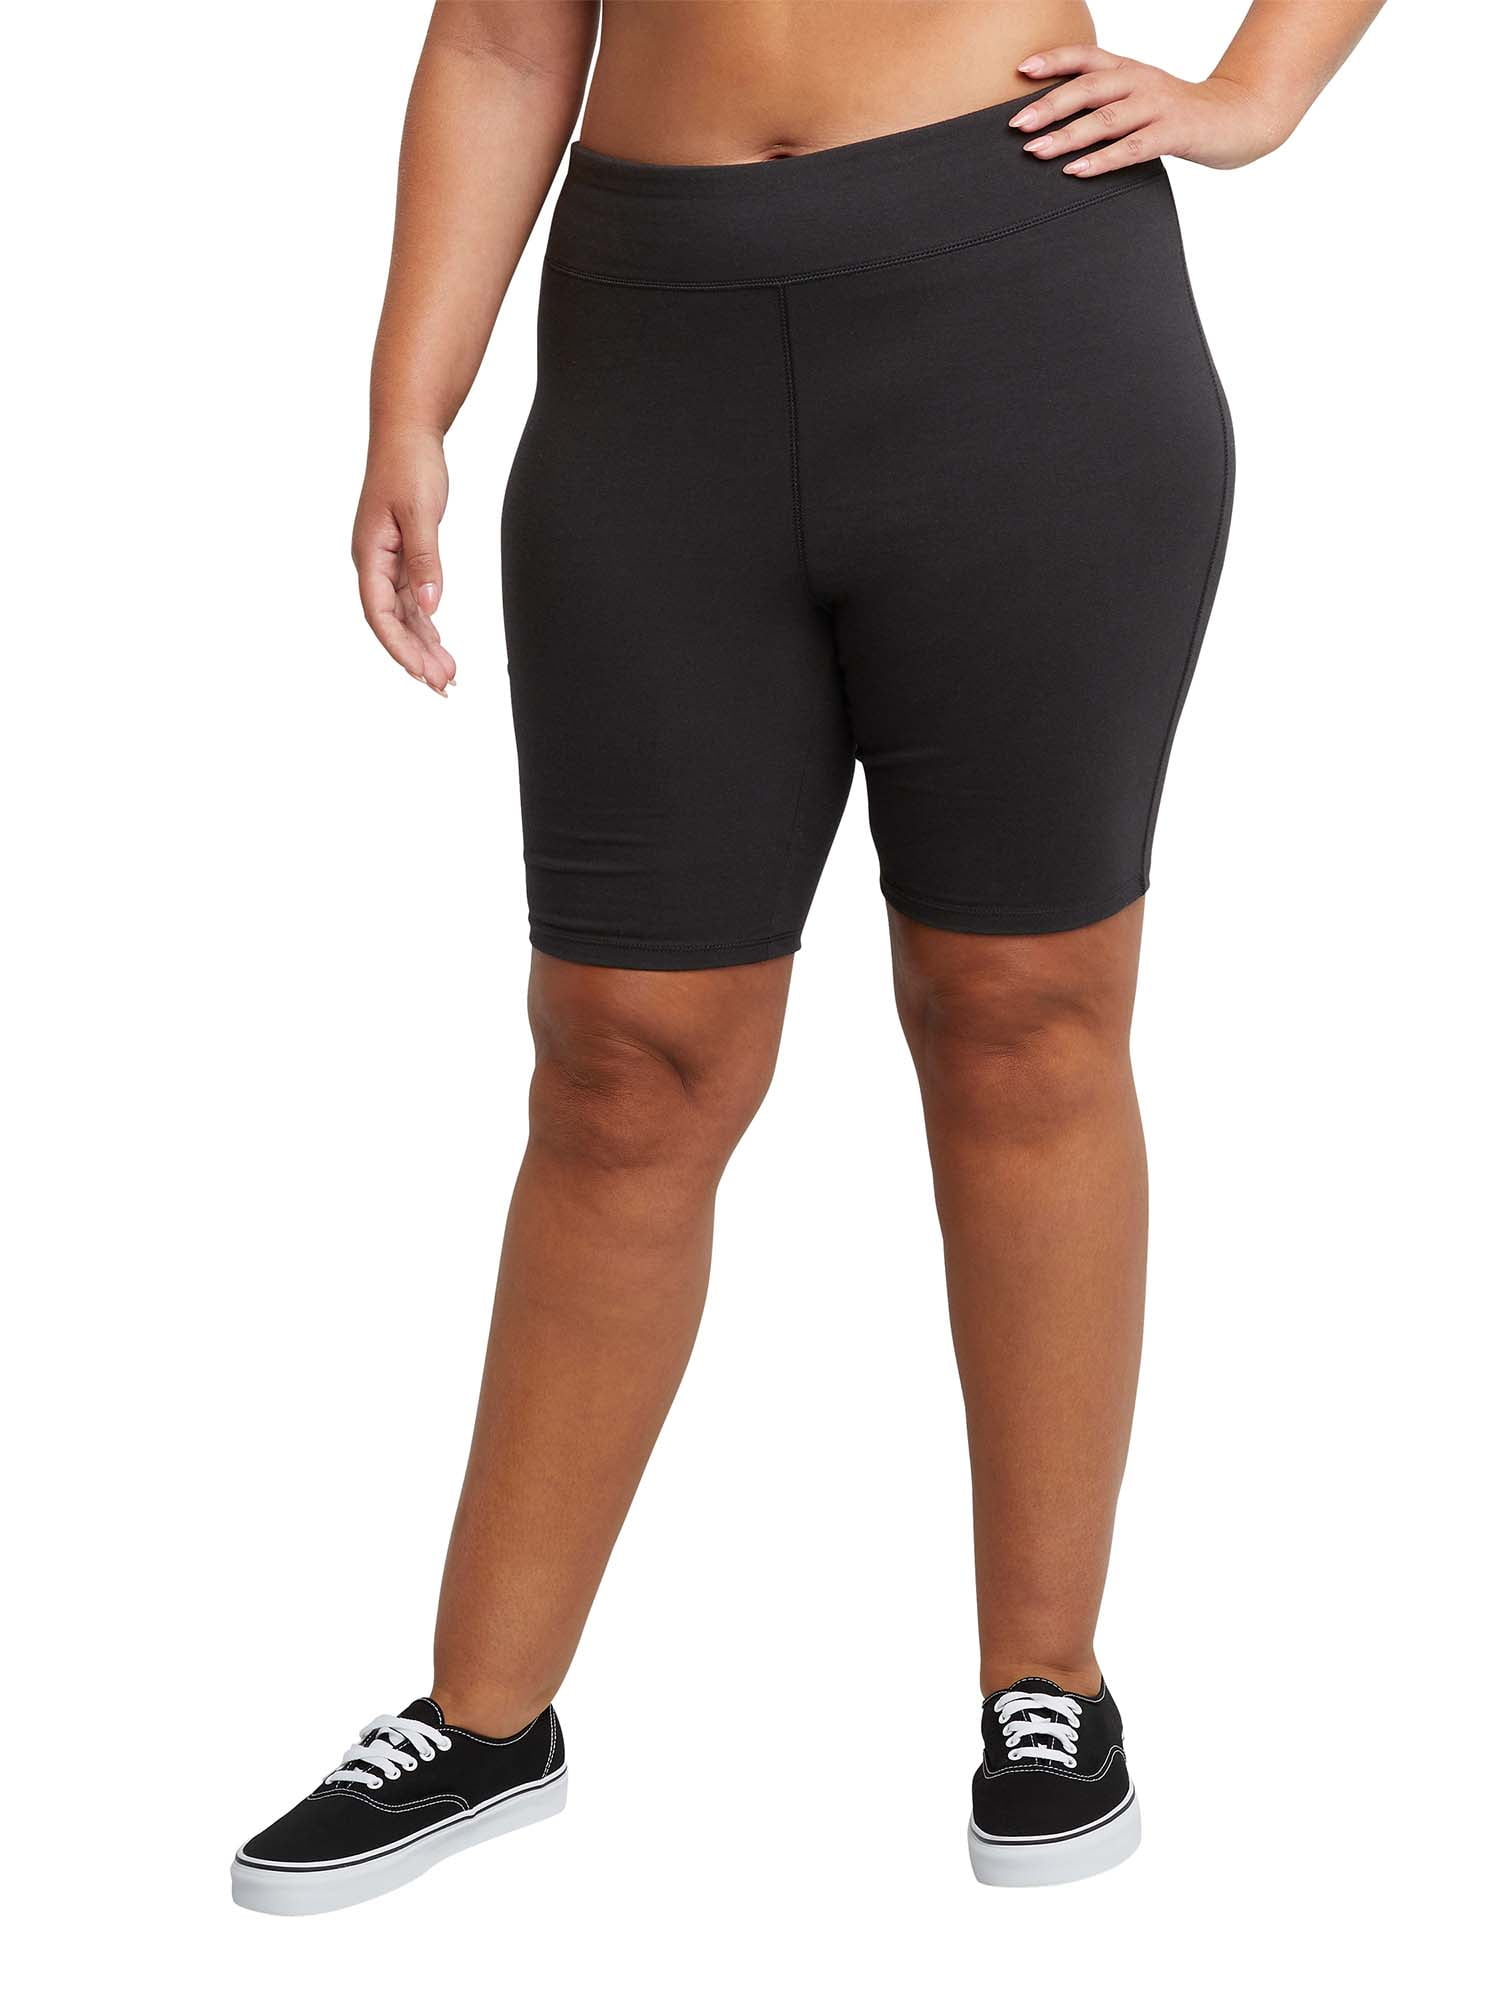 JMS by Hanes Women's Plus Size Stretch Jersey Bike Short - Walmart.com